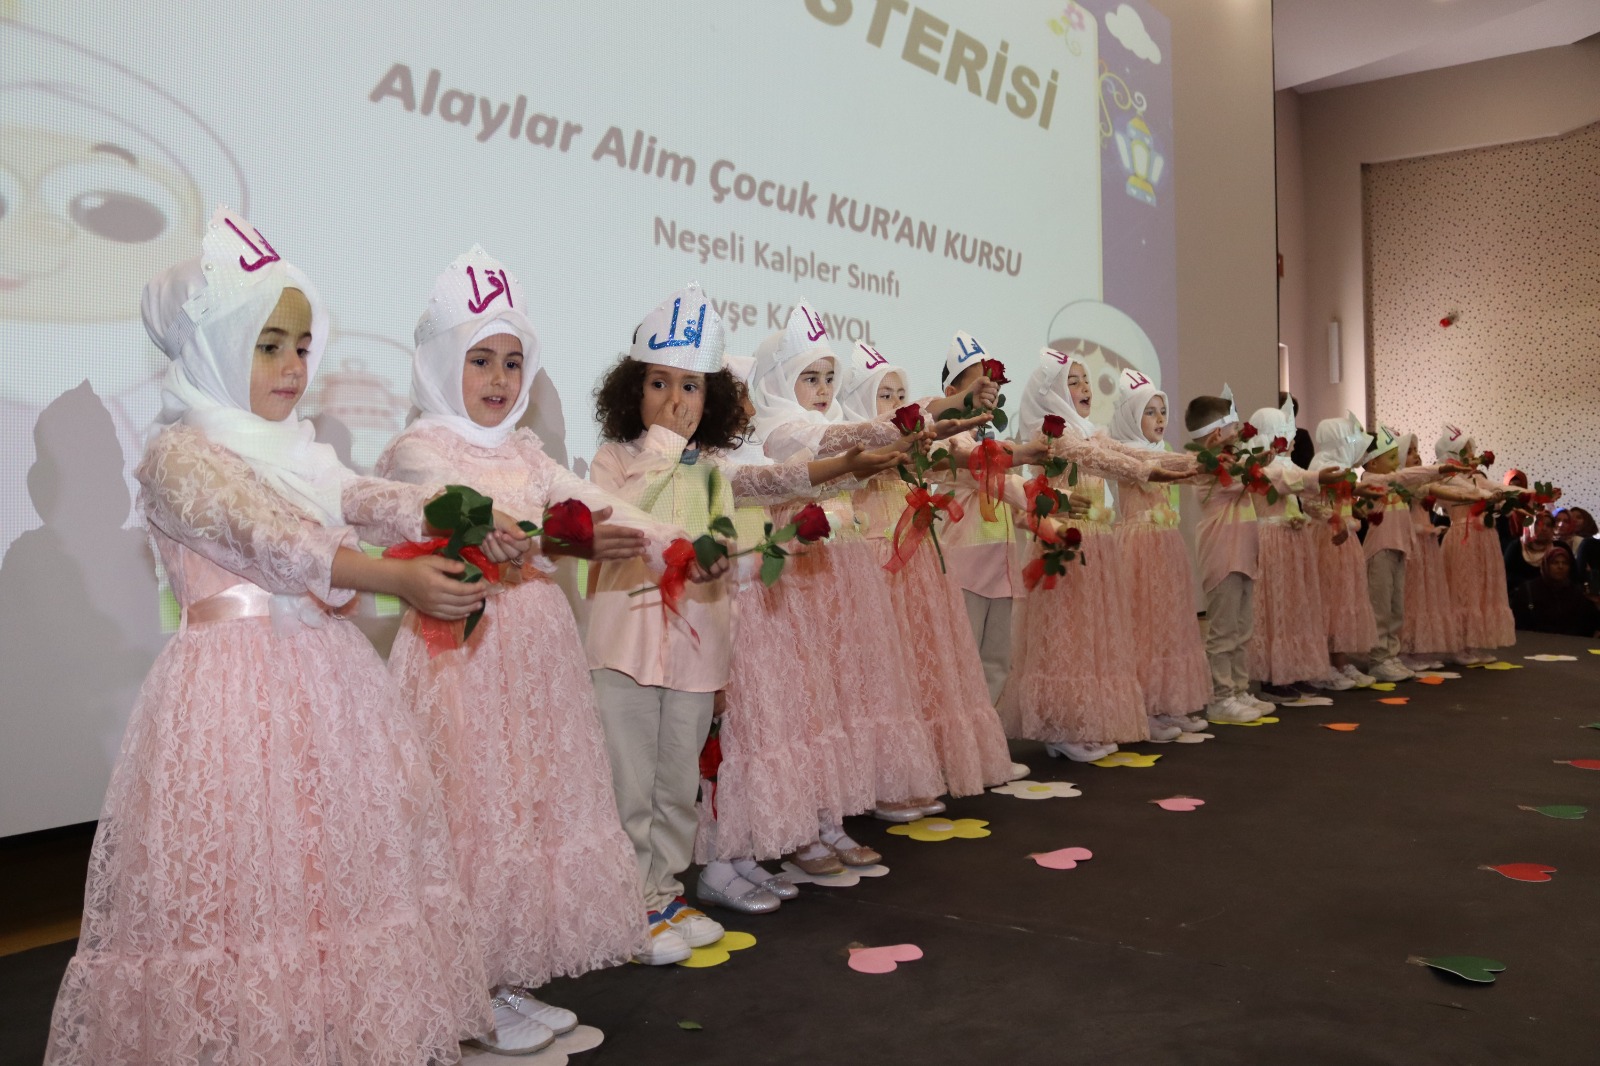 Seydişehir'de Kur'an kursu öğrencilerine yıl sonu etkinliği düzenlendi